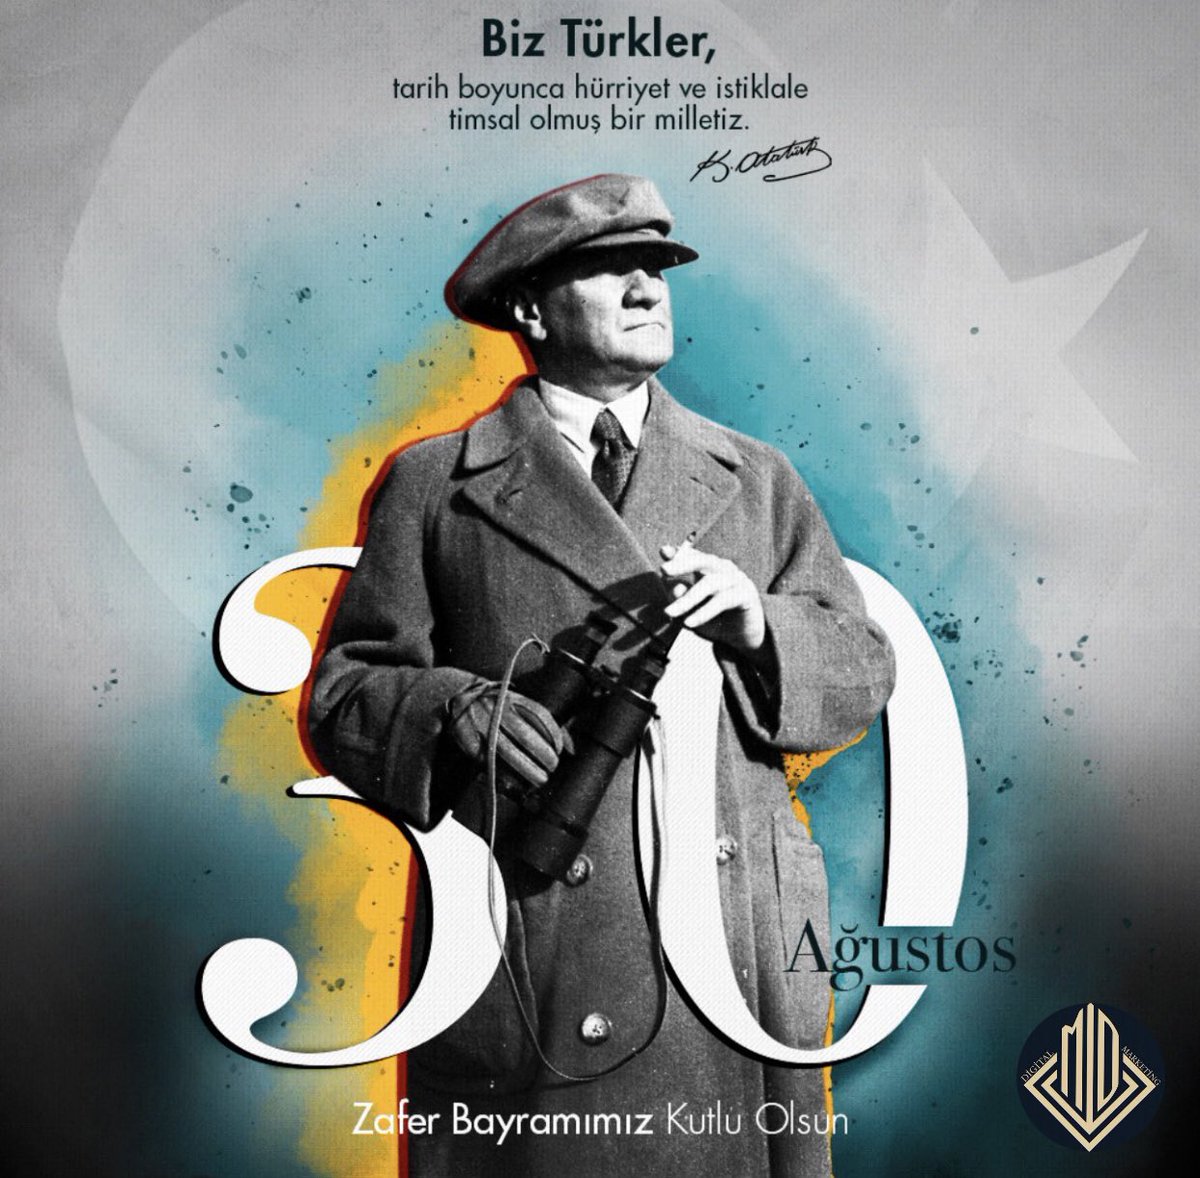 🇹🇷 Bağımsızlık mücadelemizin en büyük zaferi, 30 Ağustos Zafer Bayramımızın 101. yılını kutluyor; İzinden asla ayrılmayacağımız Ulu Önderimiz Gazi Mustafa Kemal Atatürk’ü, silah arkadaşlarını saygıyla anıyoruz. #30AgustosZaferBayrami #ZaferBayramı